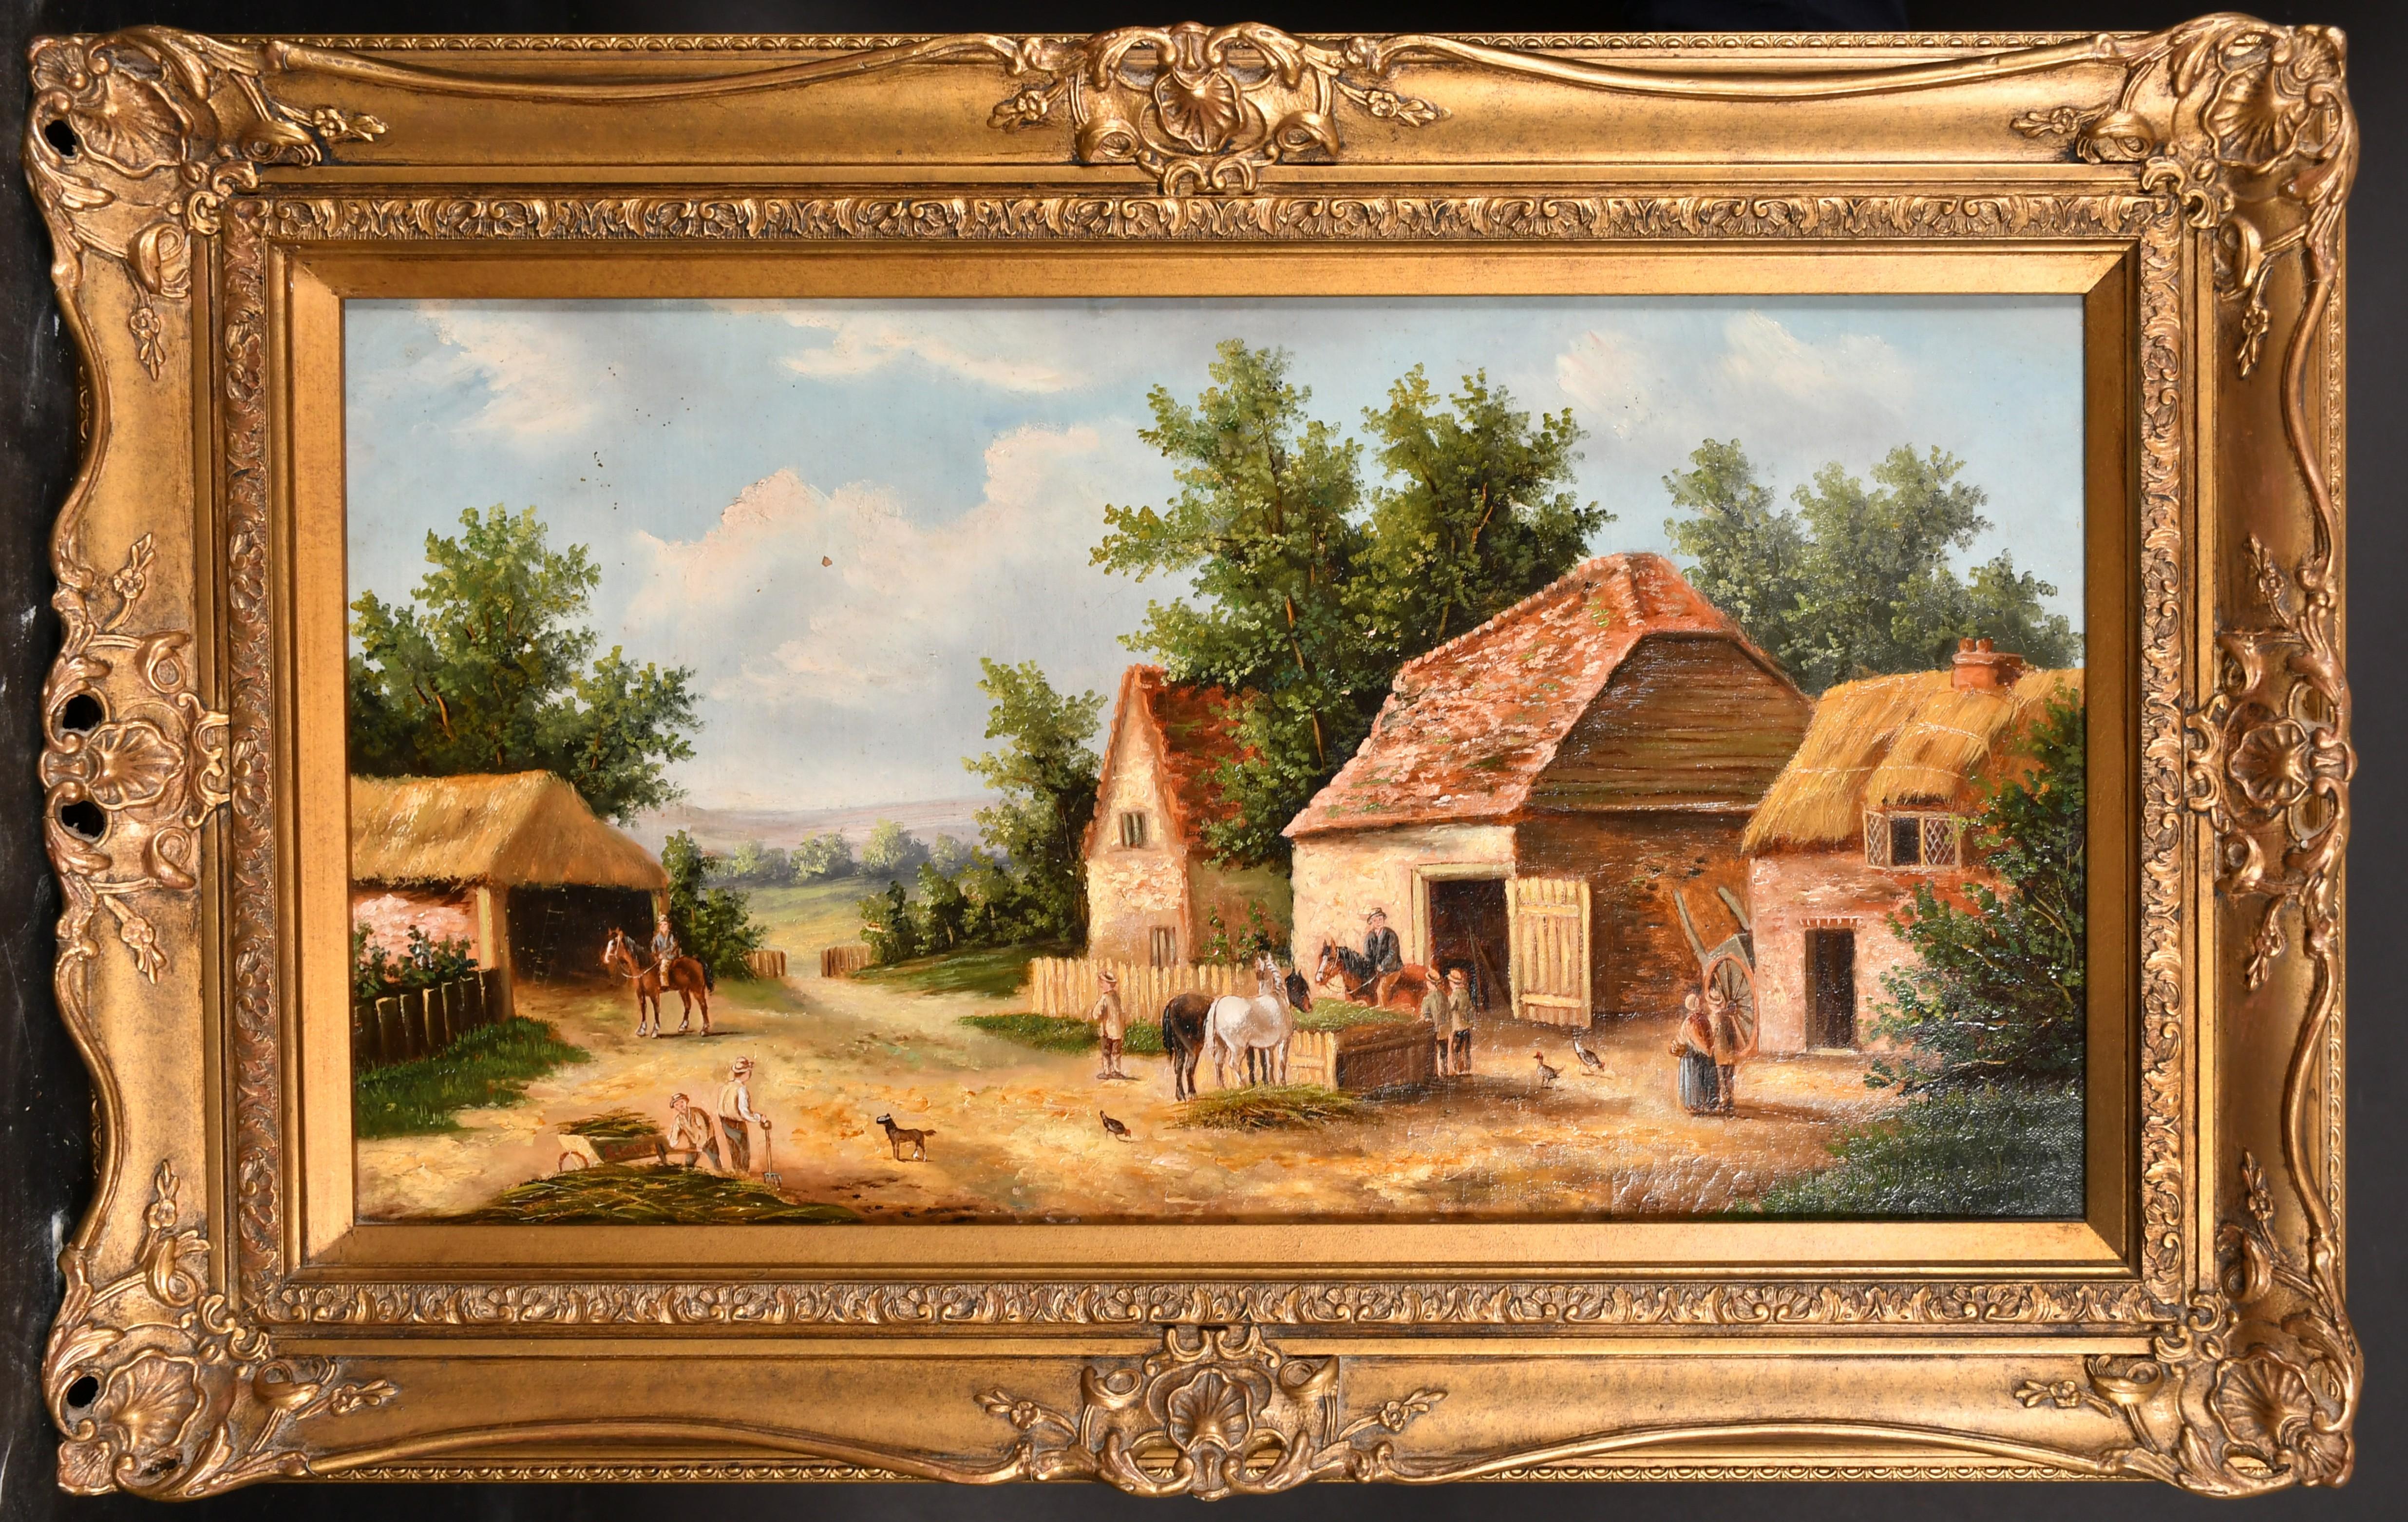 Georgina LARA Peinture à l'huile du 19e siècle paysage scène de ferme - École anglaise Painting par Georgina Lara